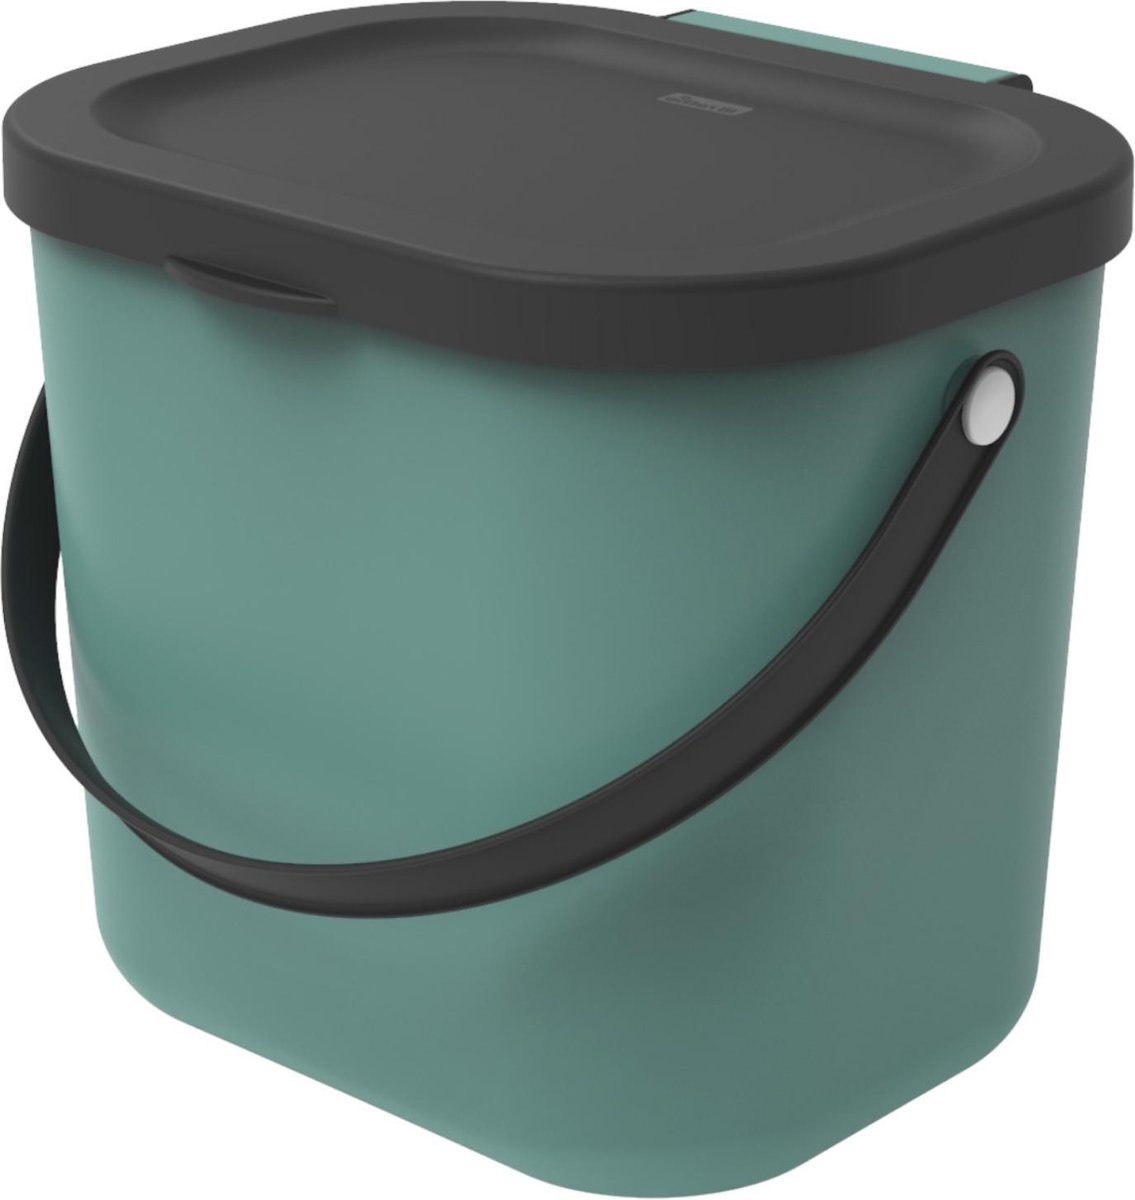 Rotho Albula Bioafvalbak 6l met deksel en handvat voor de keuken, Kunststof (PP) BPA-vrij, donkergroen/antraciet, 6l (23.5 x 20.0 x 20.8 cm)